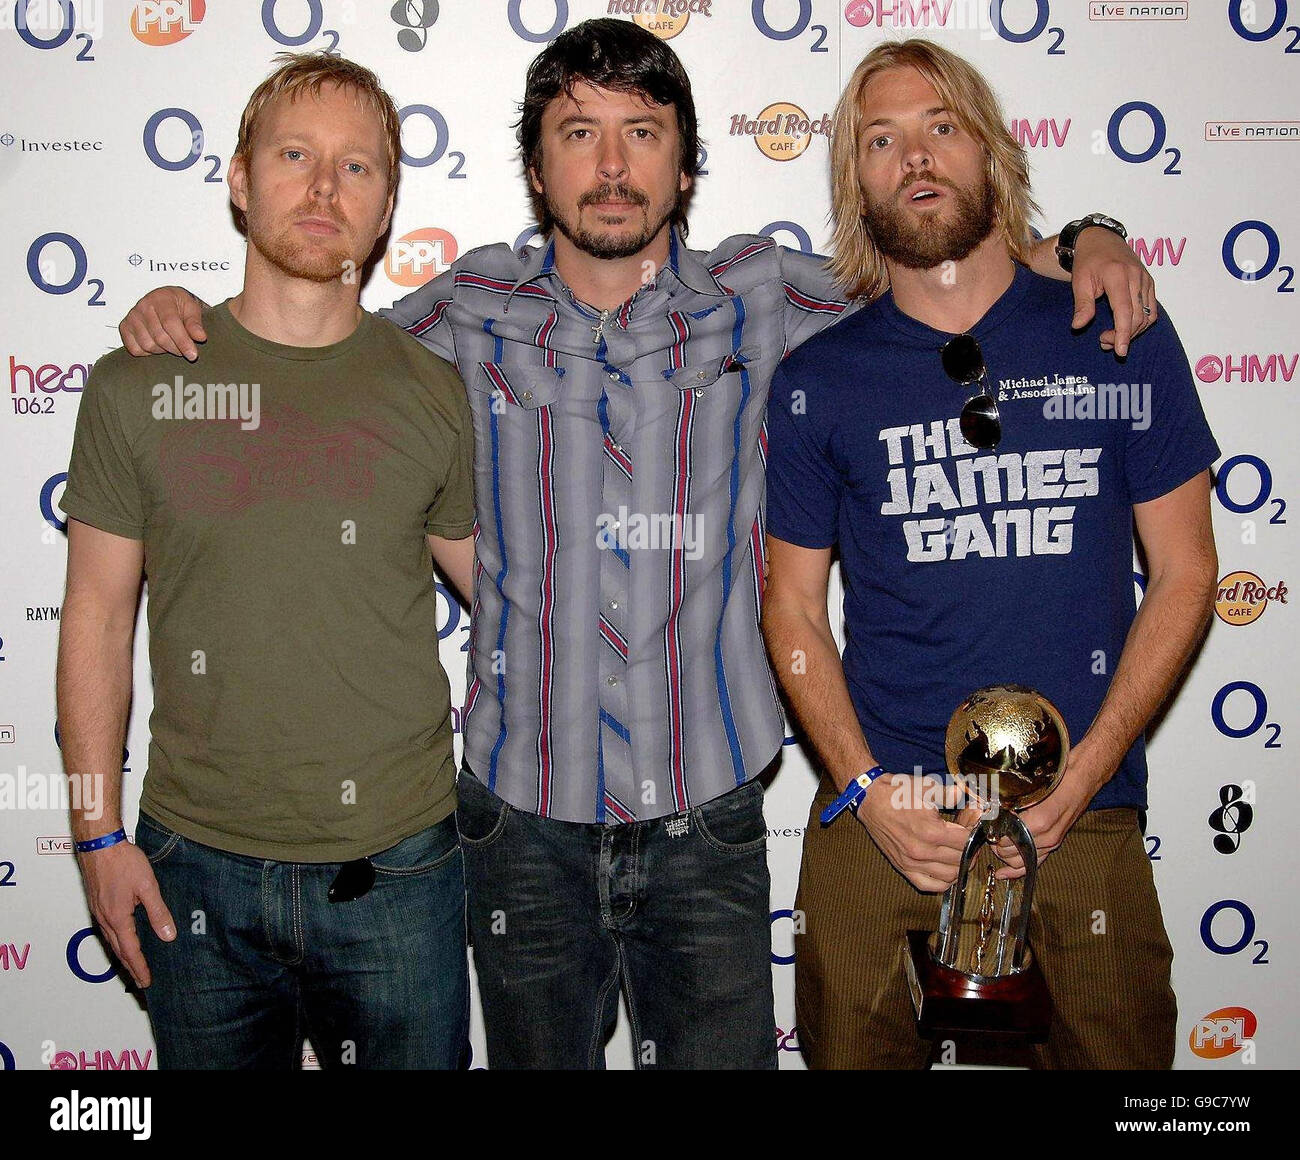 (Von links nach rechts) Nate Mendel, Dave Grohl und Taylor Hawkins von den Foo Fighters sammeln den International Award während der Nordoff Robbins Silver Clef Awards im Hilton Hotel im Zentrum von London. Stockfoto